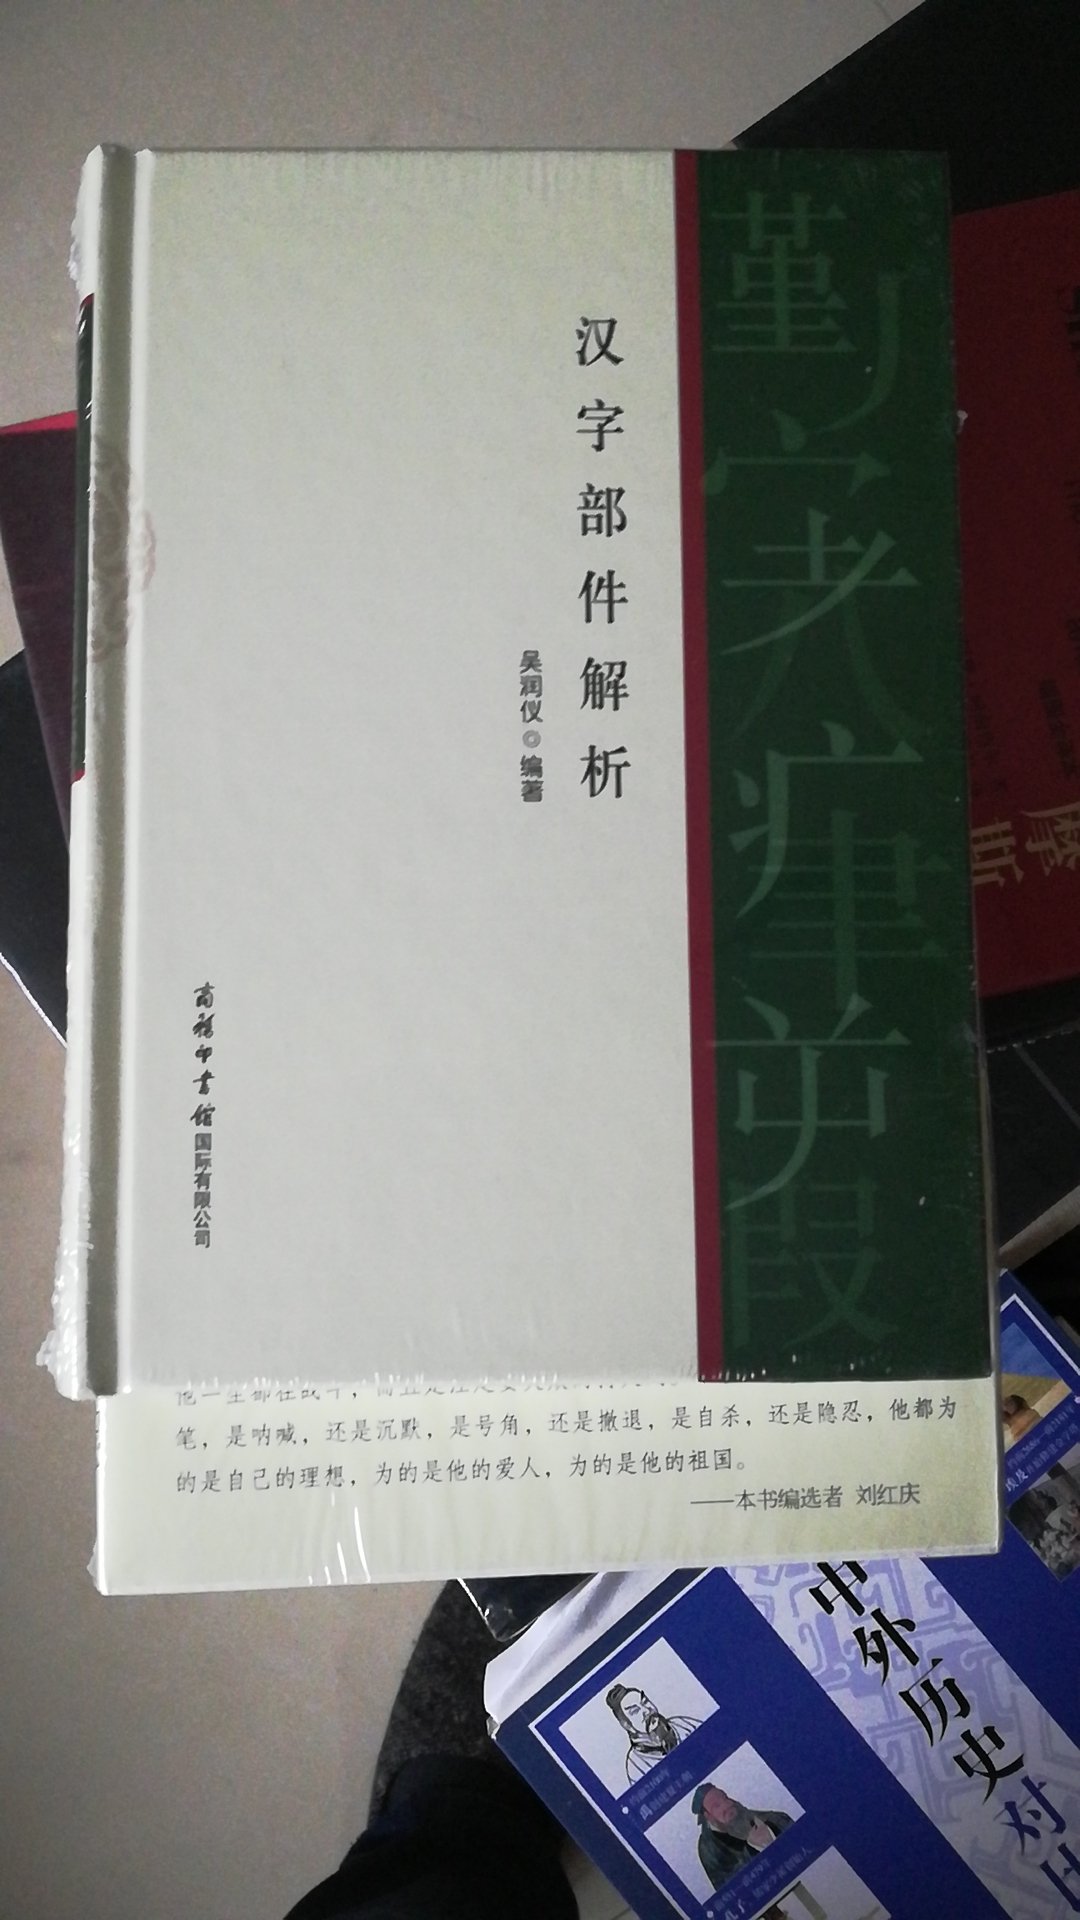 详尽解析514个现代汉语常用字部件。